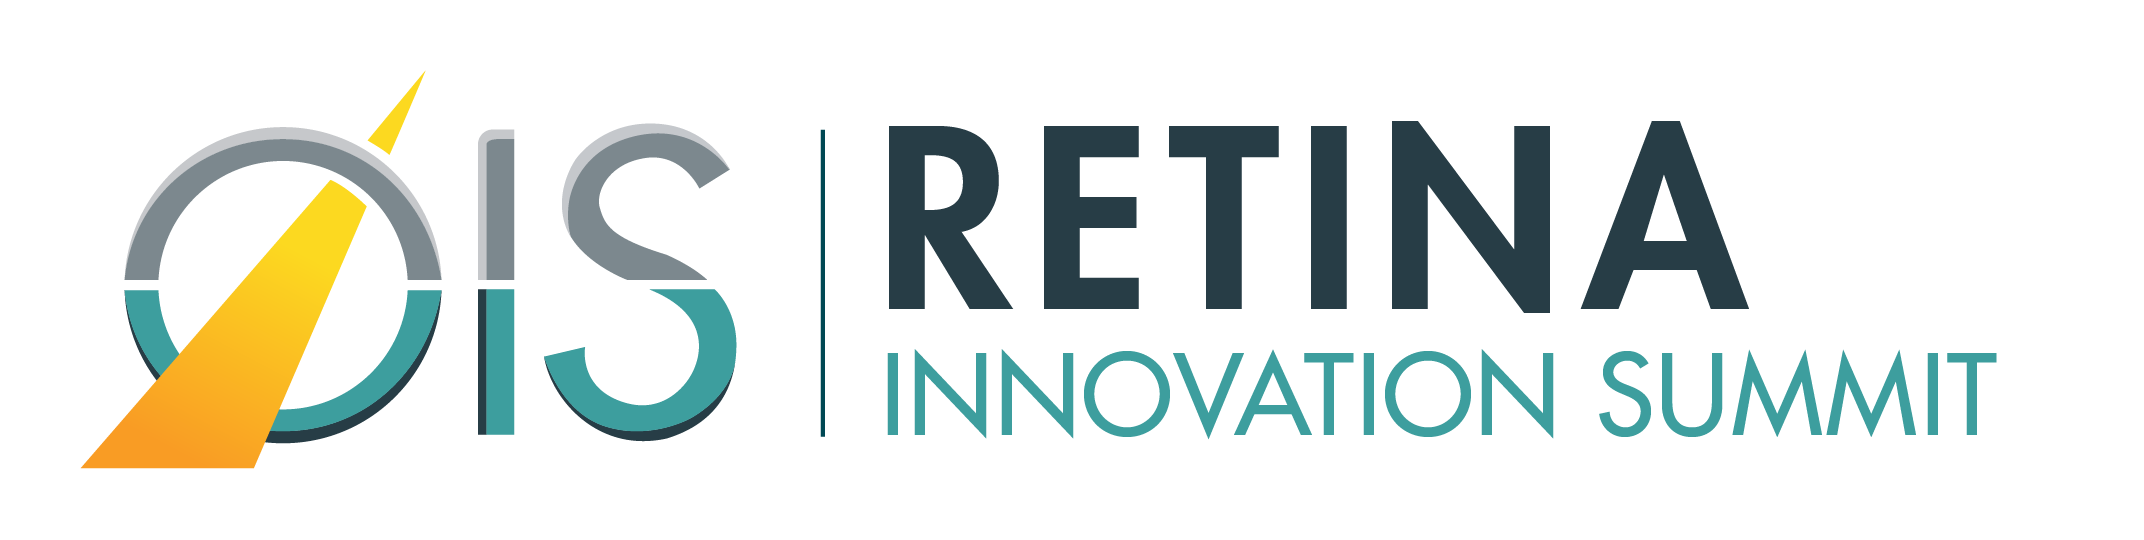 OIS Retina Innovation Summit banner